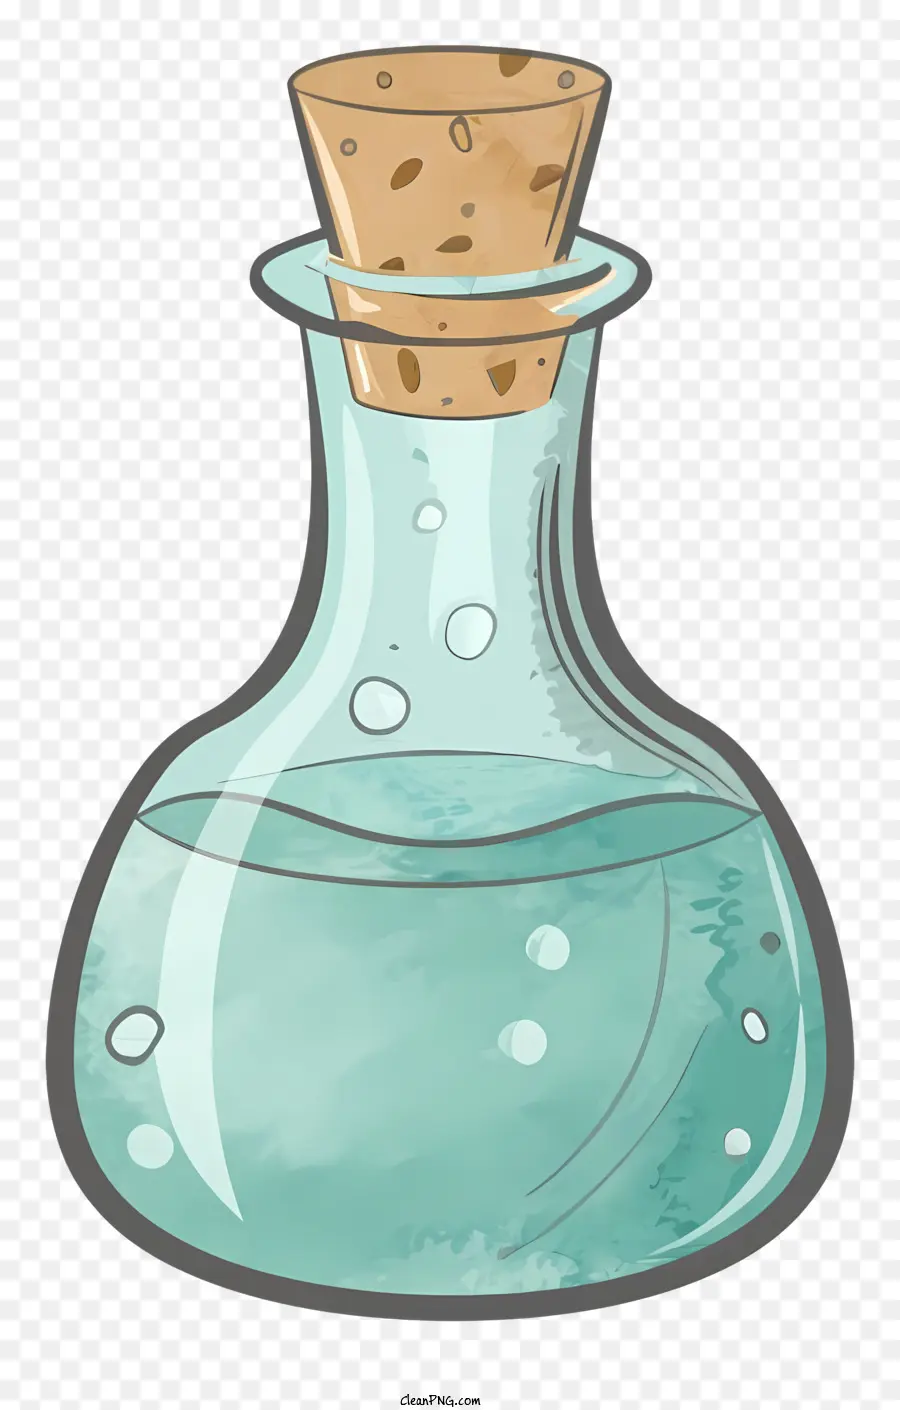 Chai thủy tinh hoạt hình nút nút chai chứa đầy nước trong vắt - Clear Glass Water Chai có nút chai